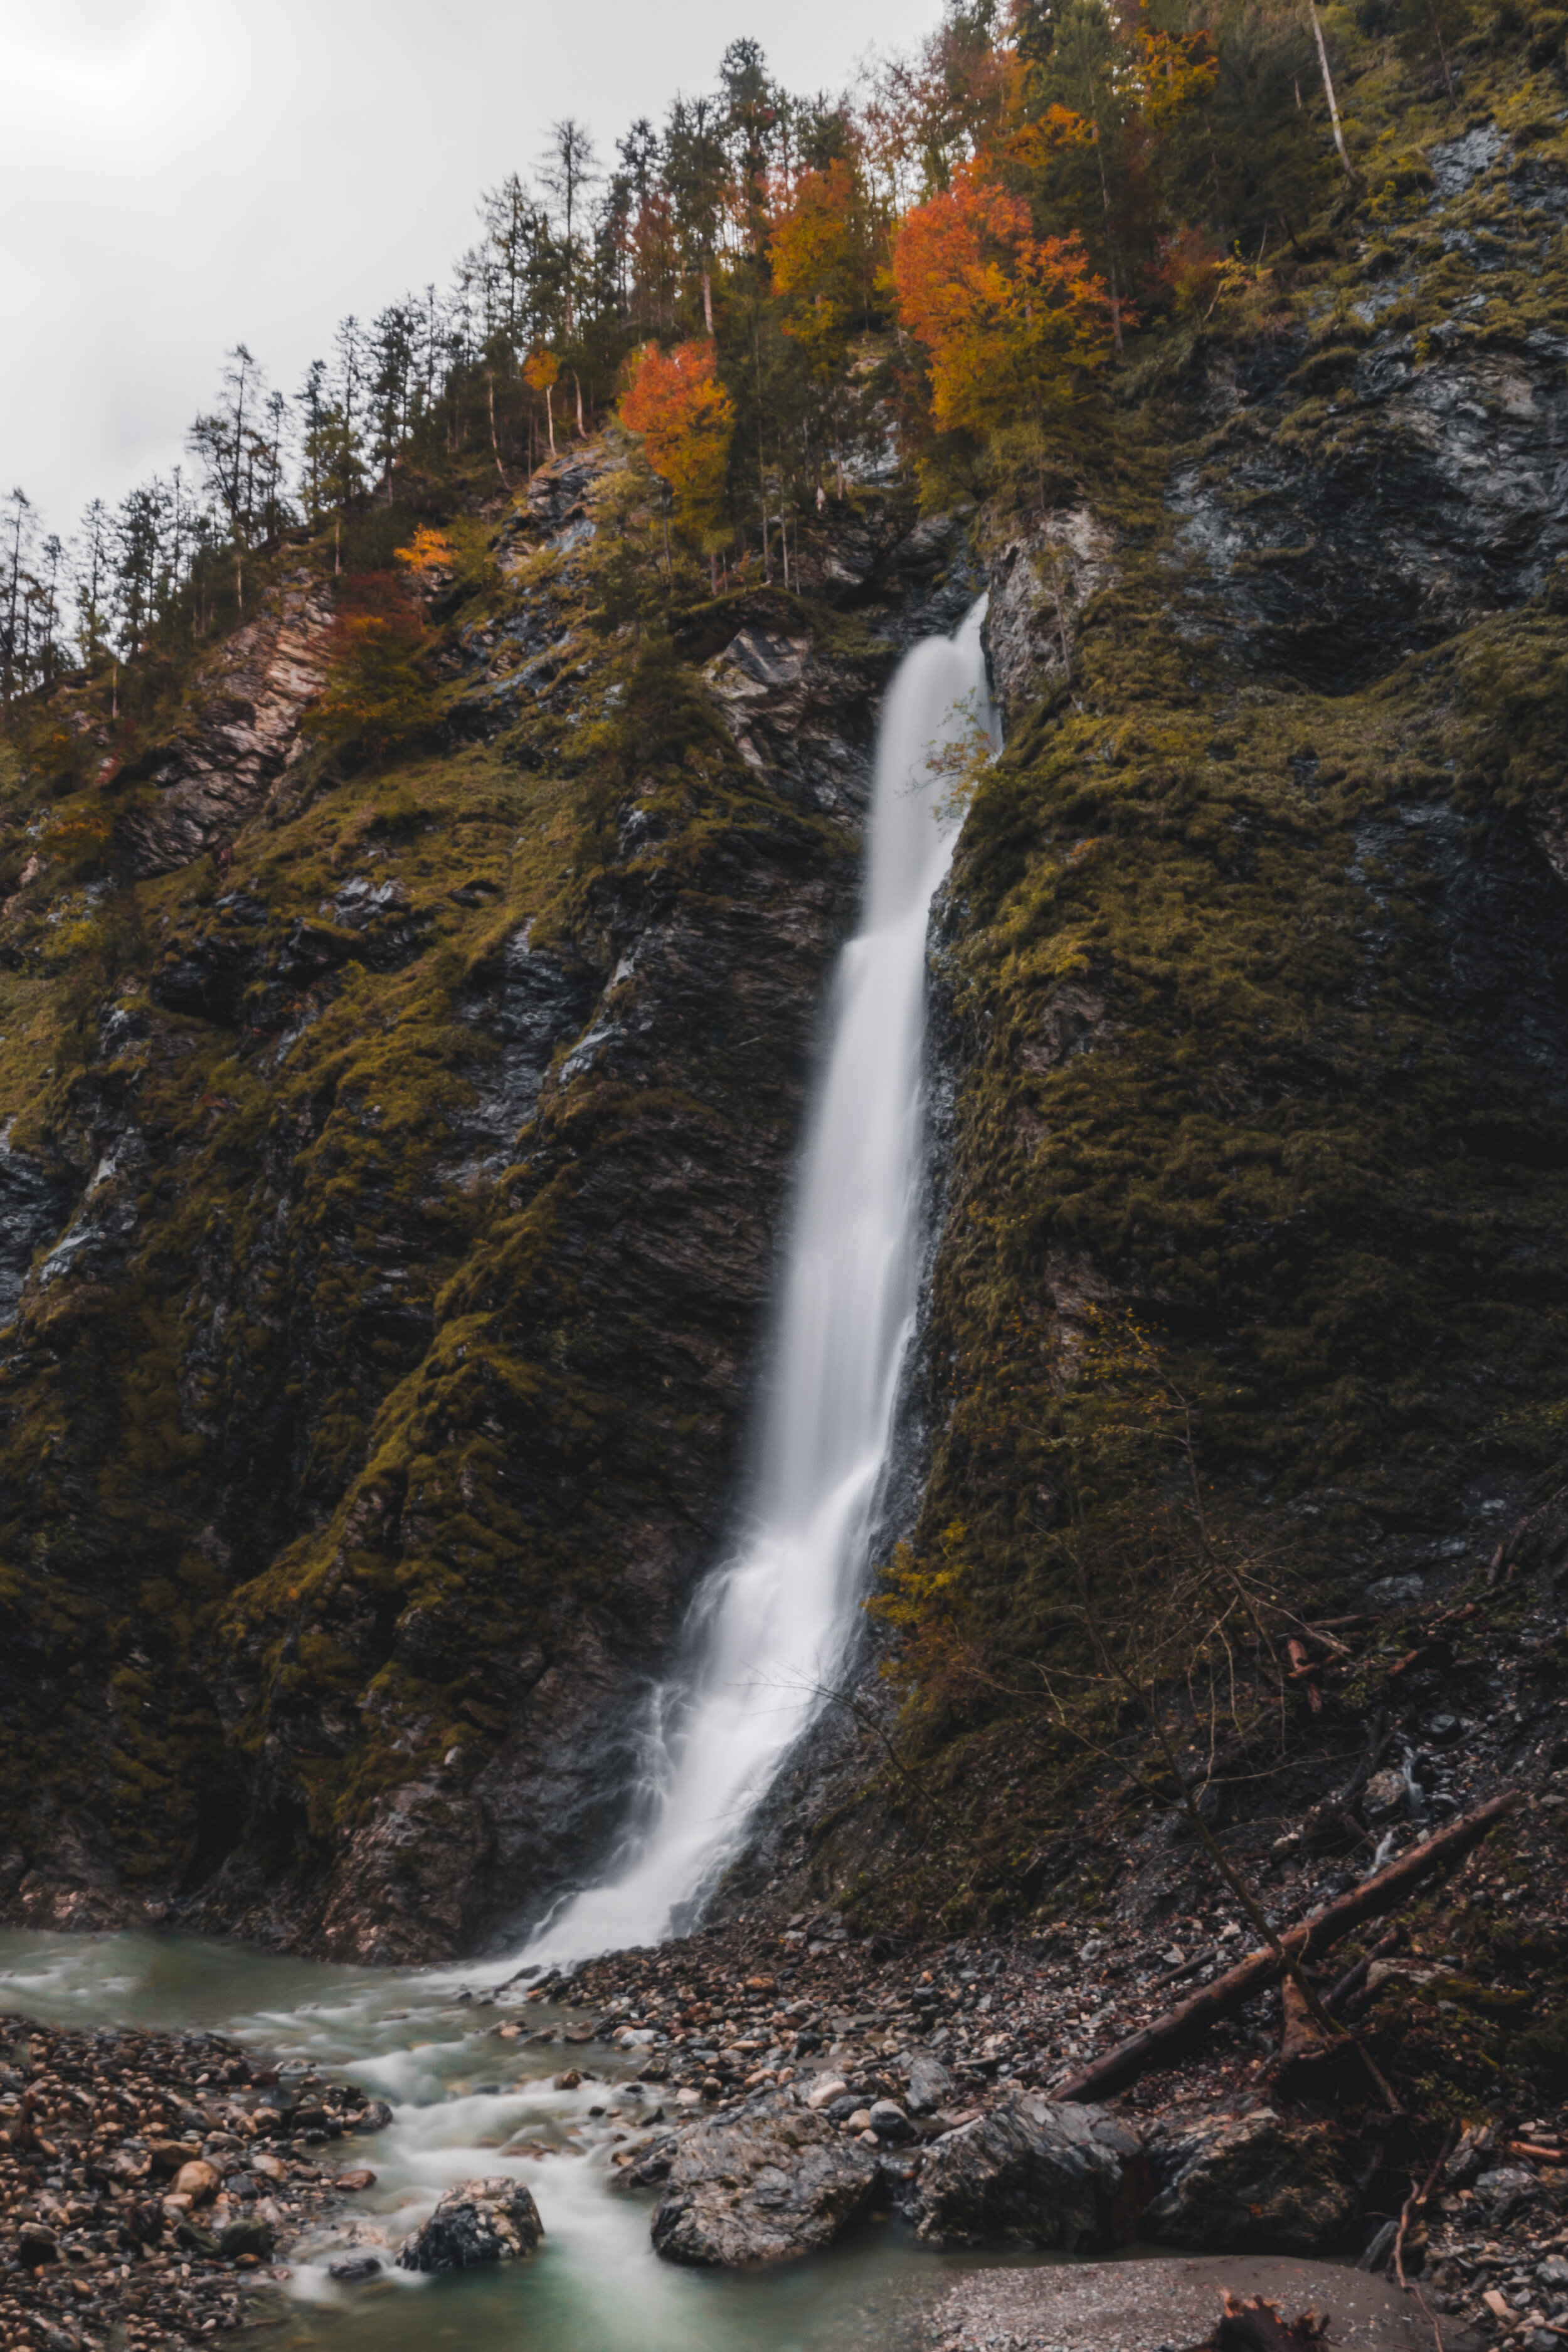 Liechtensteinklamm waterfall-.jpg